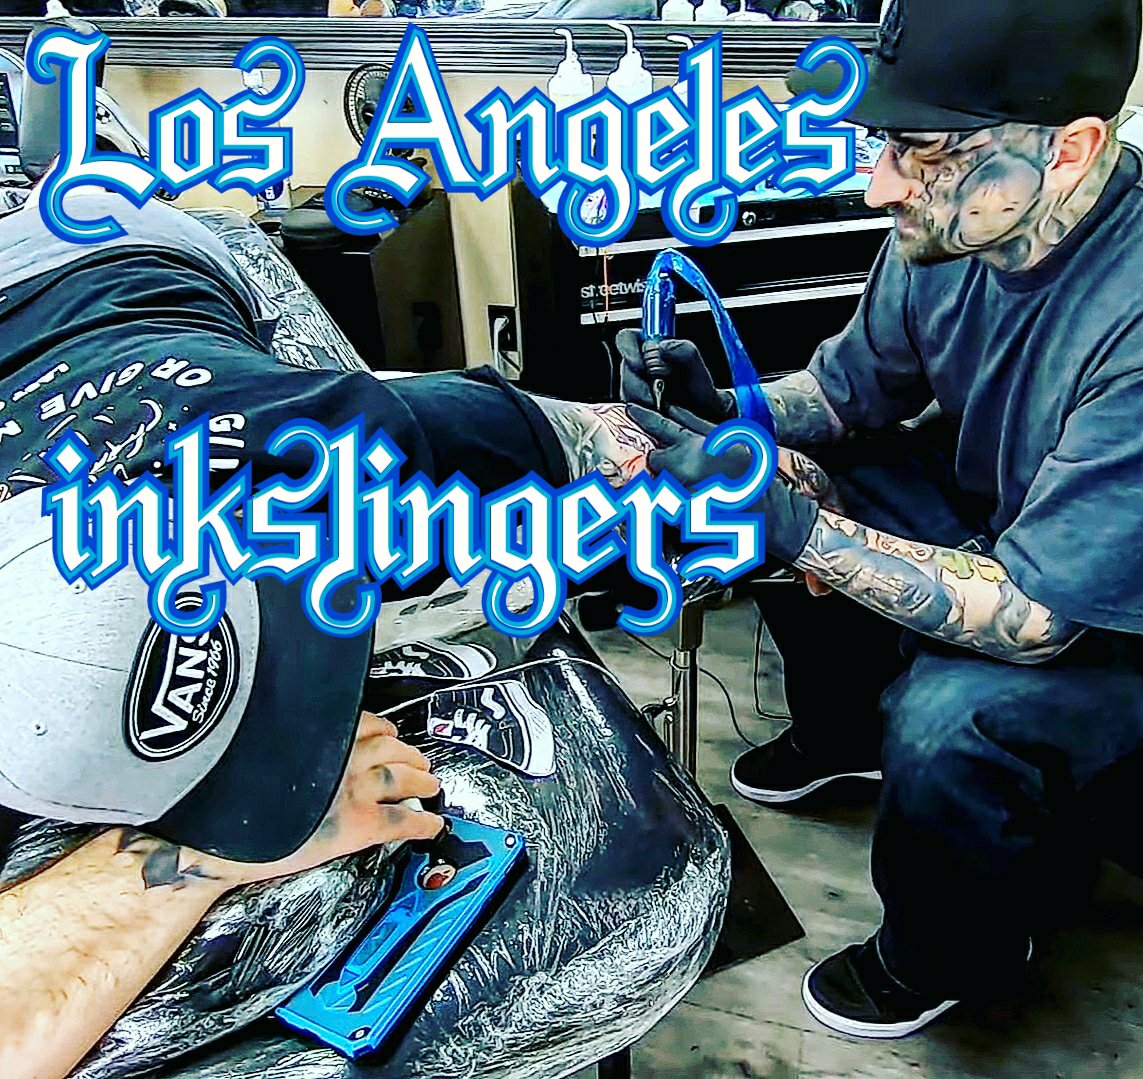 本場のチカーノタトゥー ロサンゼルスの人気タトゥースタジオ インクスリンガーズ を撮影させて頂きました マッスルインク通信